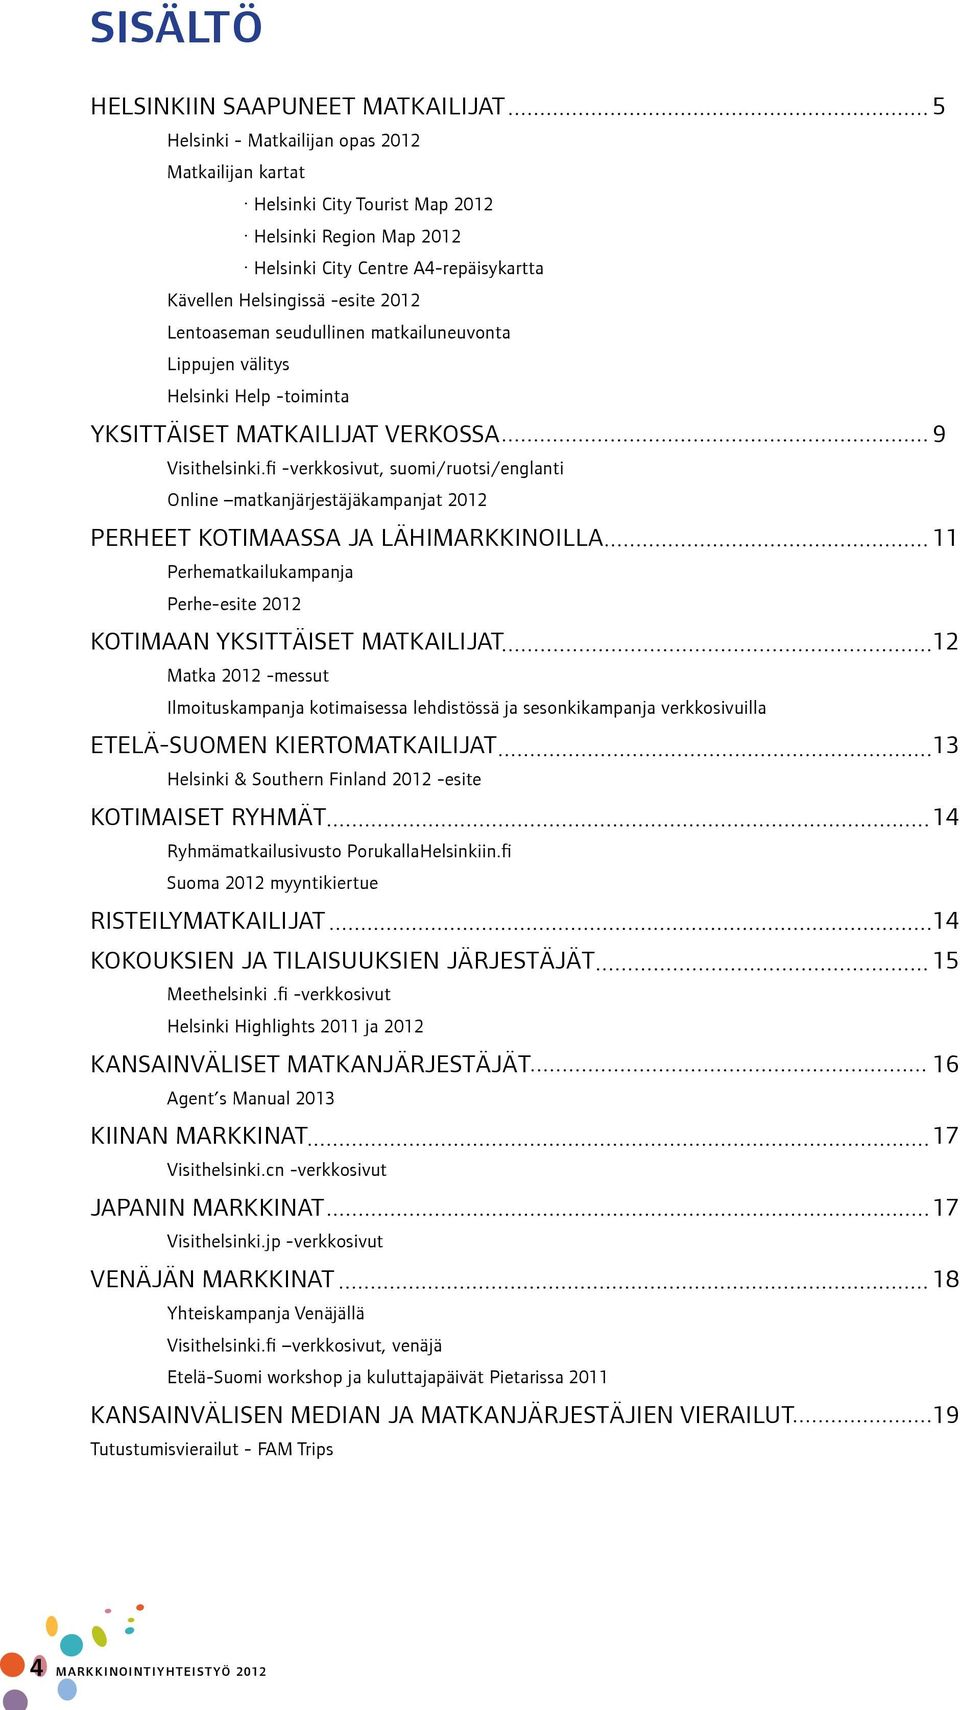 fi -verkkosivut, suomi/ruotsi/englanti Online matkanjärjestäjäkampanjat 2012 PERHEET KOTIMAASSA JA LÄHIMARKKINOILLA 11 Perhematkailukampanja Perhe-esite 2012 KOTIMAAN YKSITTÄISET MATKAILIJAT 12 Matka